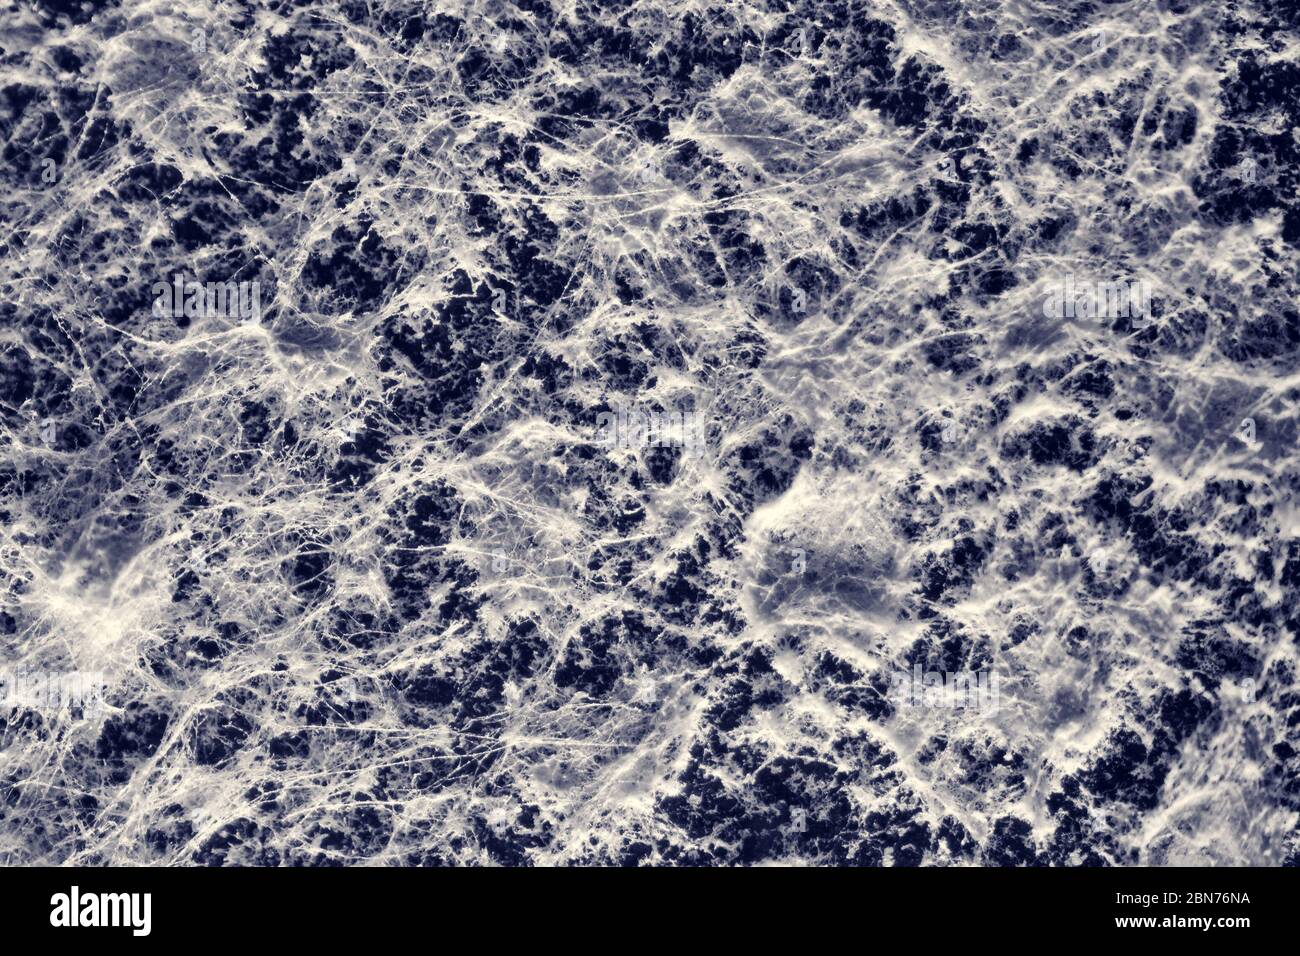 Moule noir et blanc photographié avec un microscope Banque D'Images